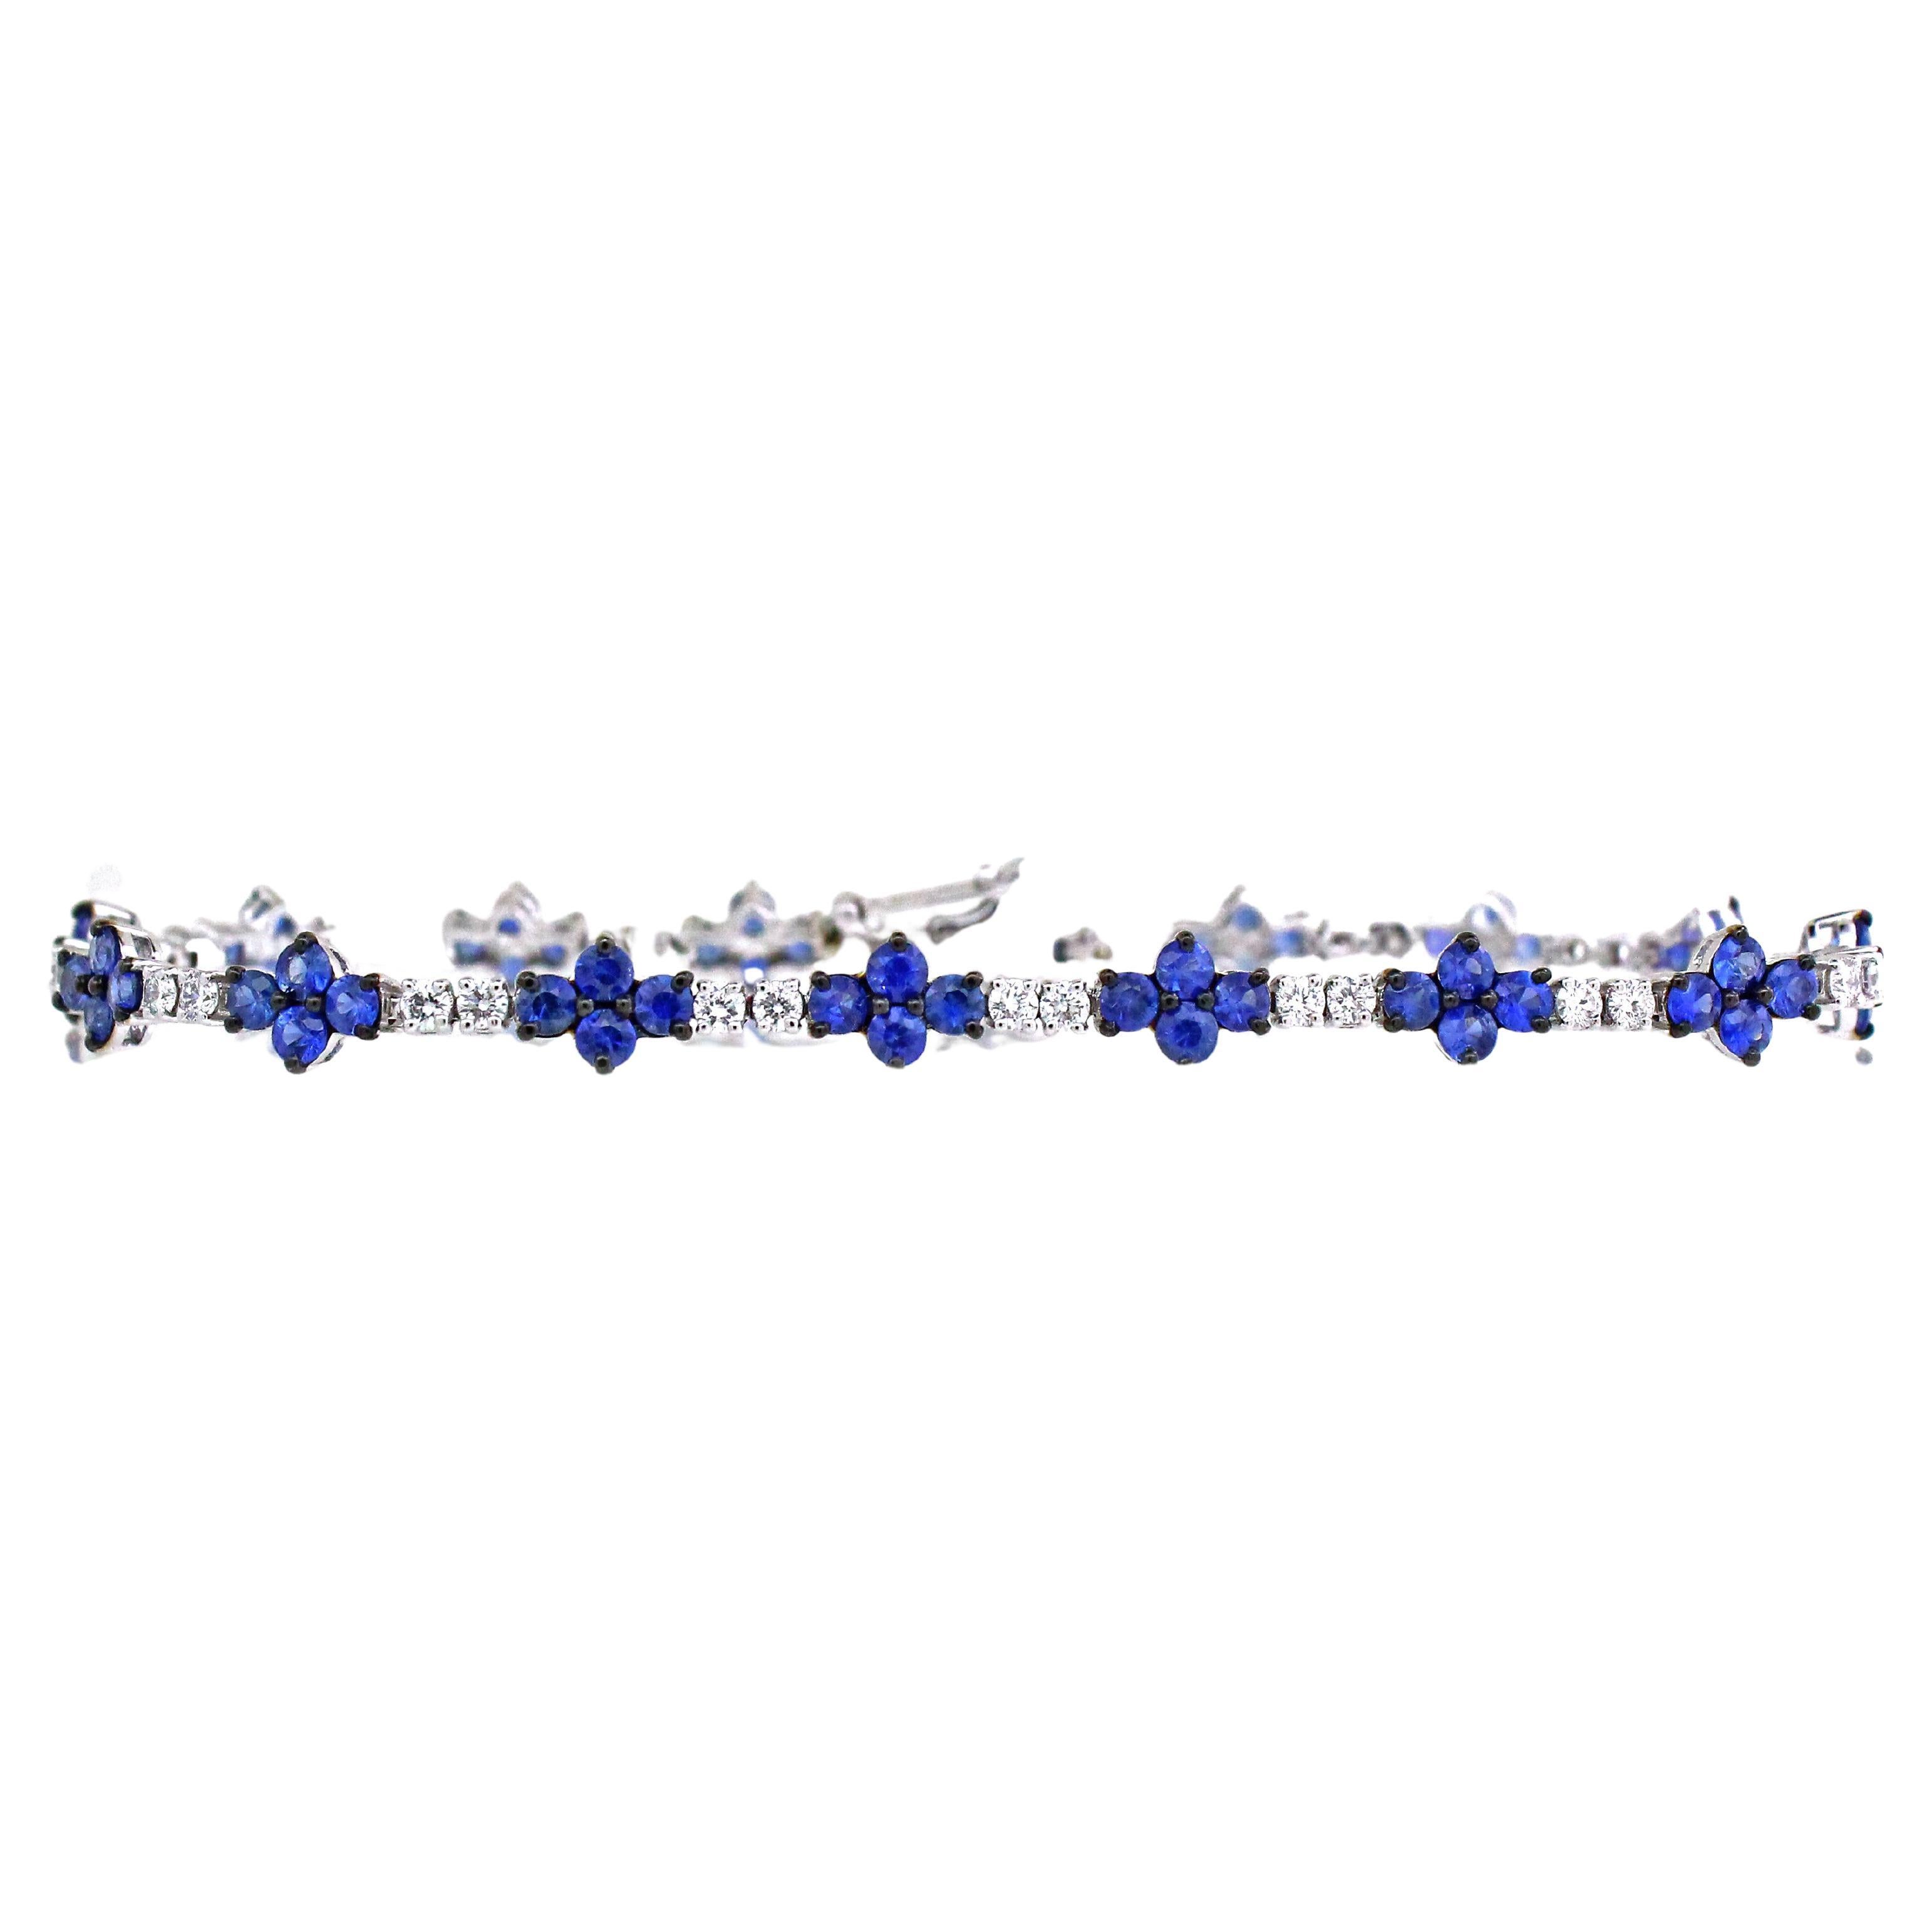 4.1 carats Blue Sapphire Bracelet For Sale